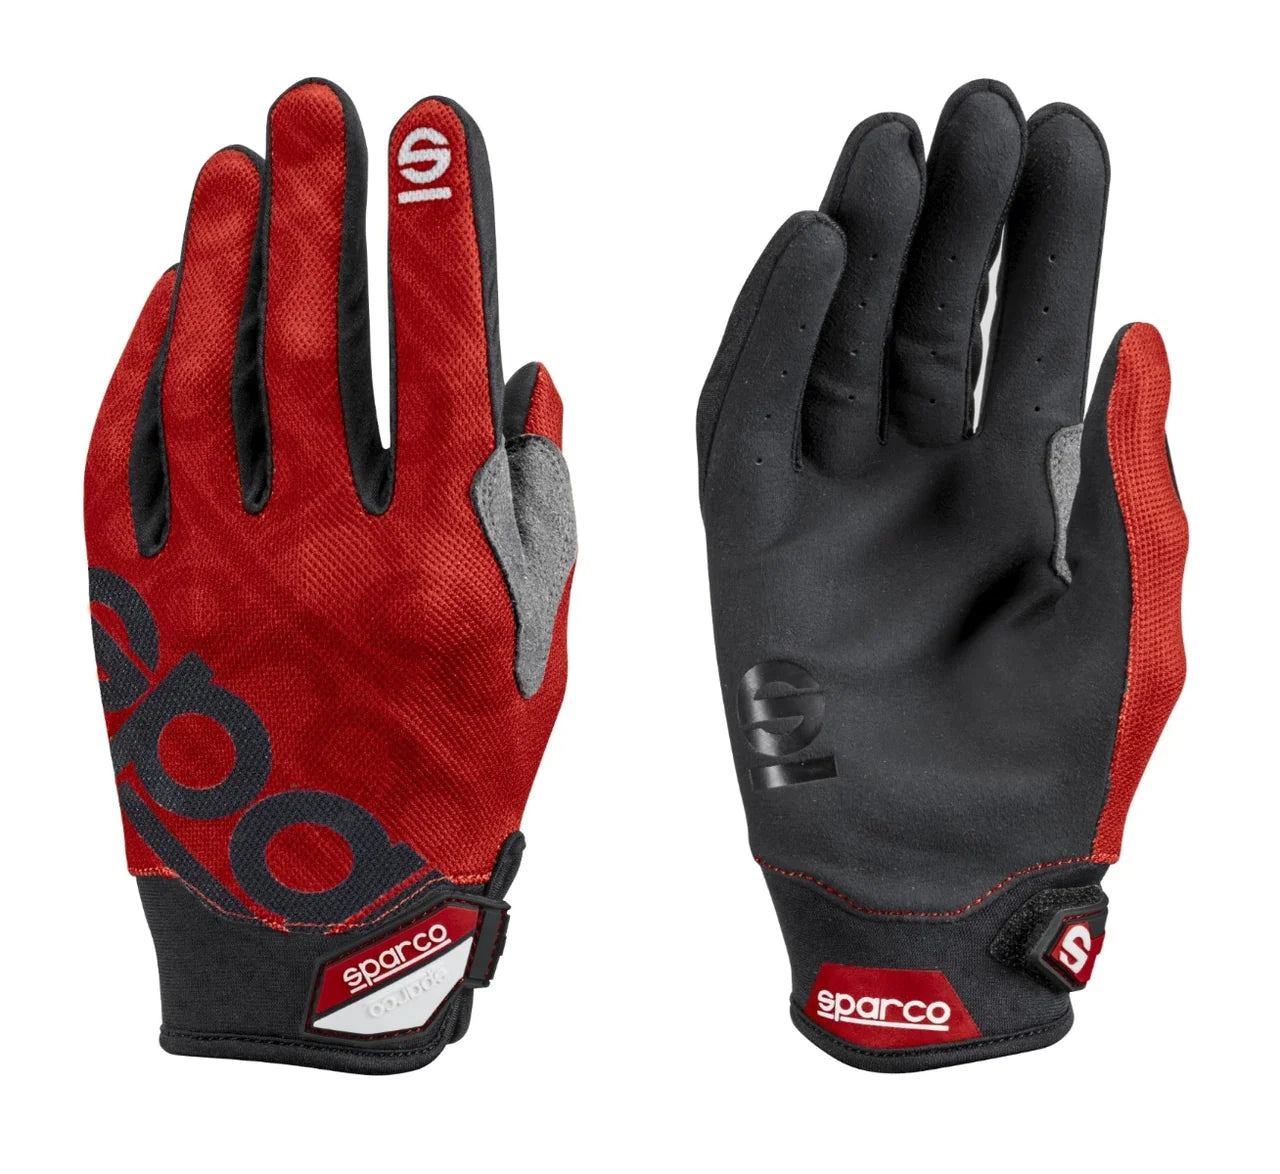 Sparco Meca 3 Pit Gloves